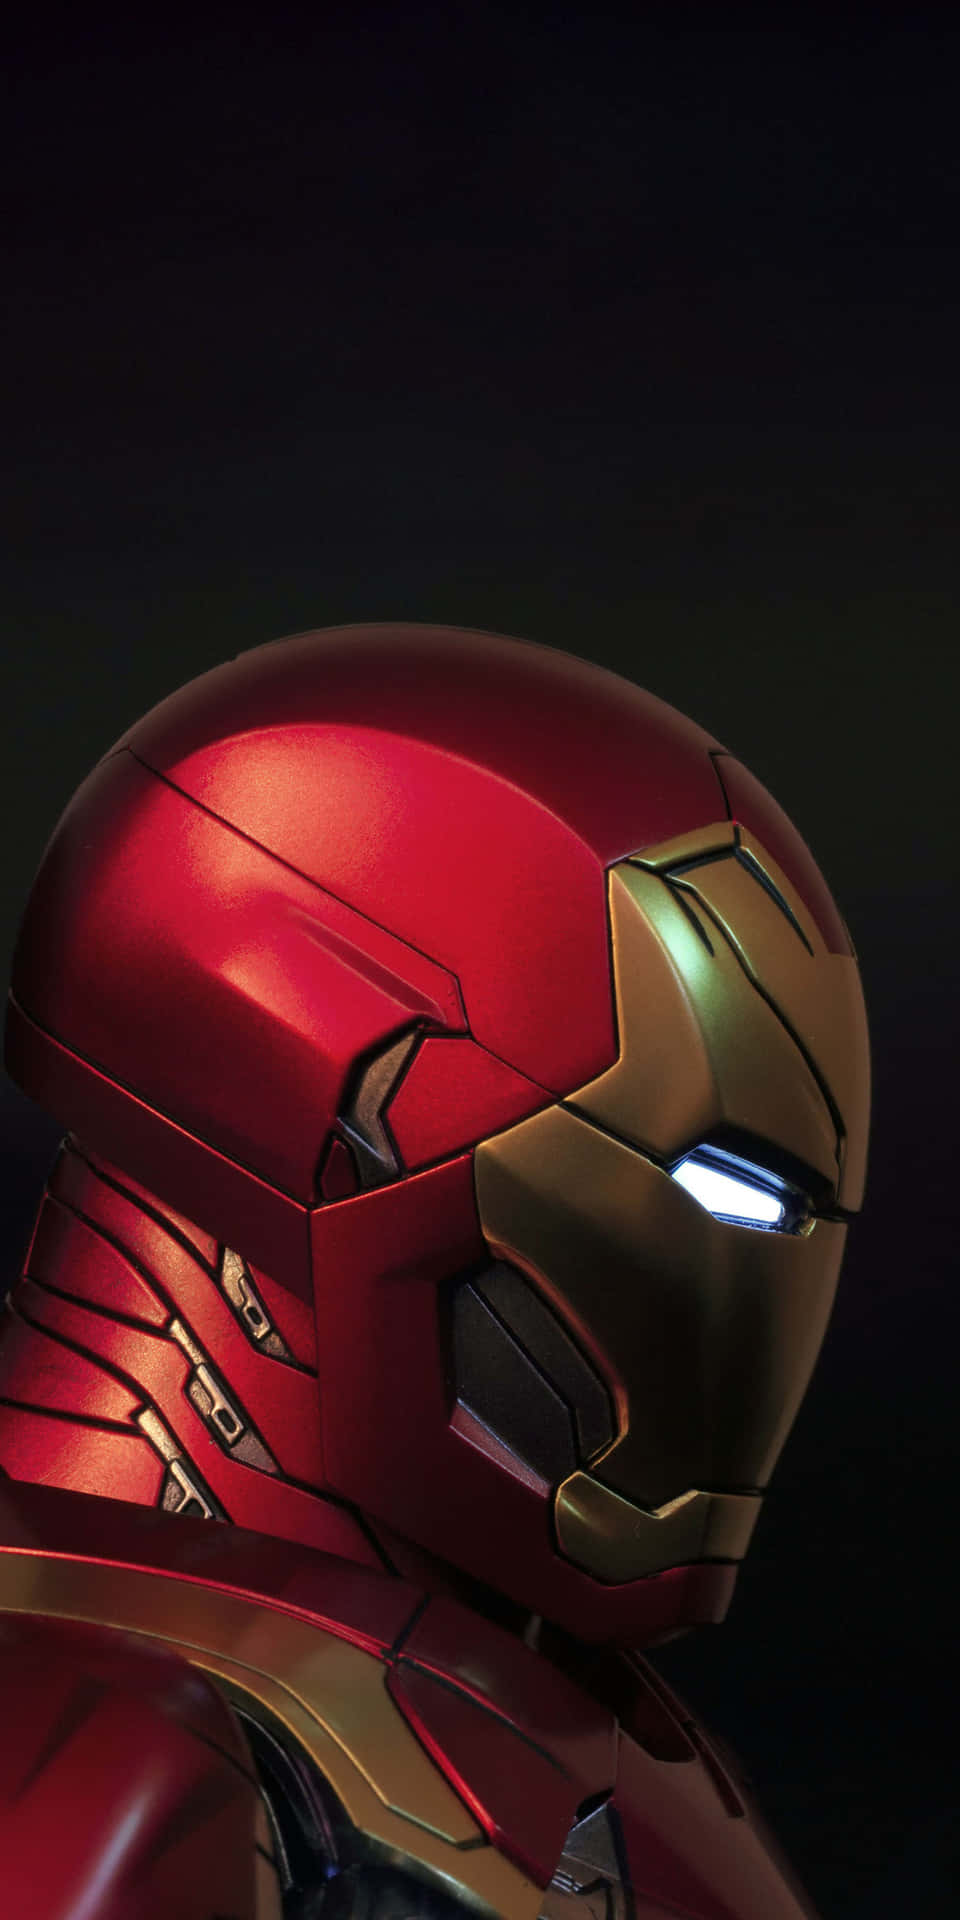 Bạn muốn trang trí điện thoại của mình với một hình nền miễn phí về Iron Man? Chúng tôi có điều đó cho bạn! Tải xuống bộ sưu tập hình nền Pixel 3 Iron Man miễn phí và thay đổi màn hình điện thoại của bạn với một sắc màu hoàn toàn mới.